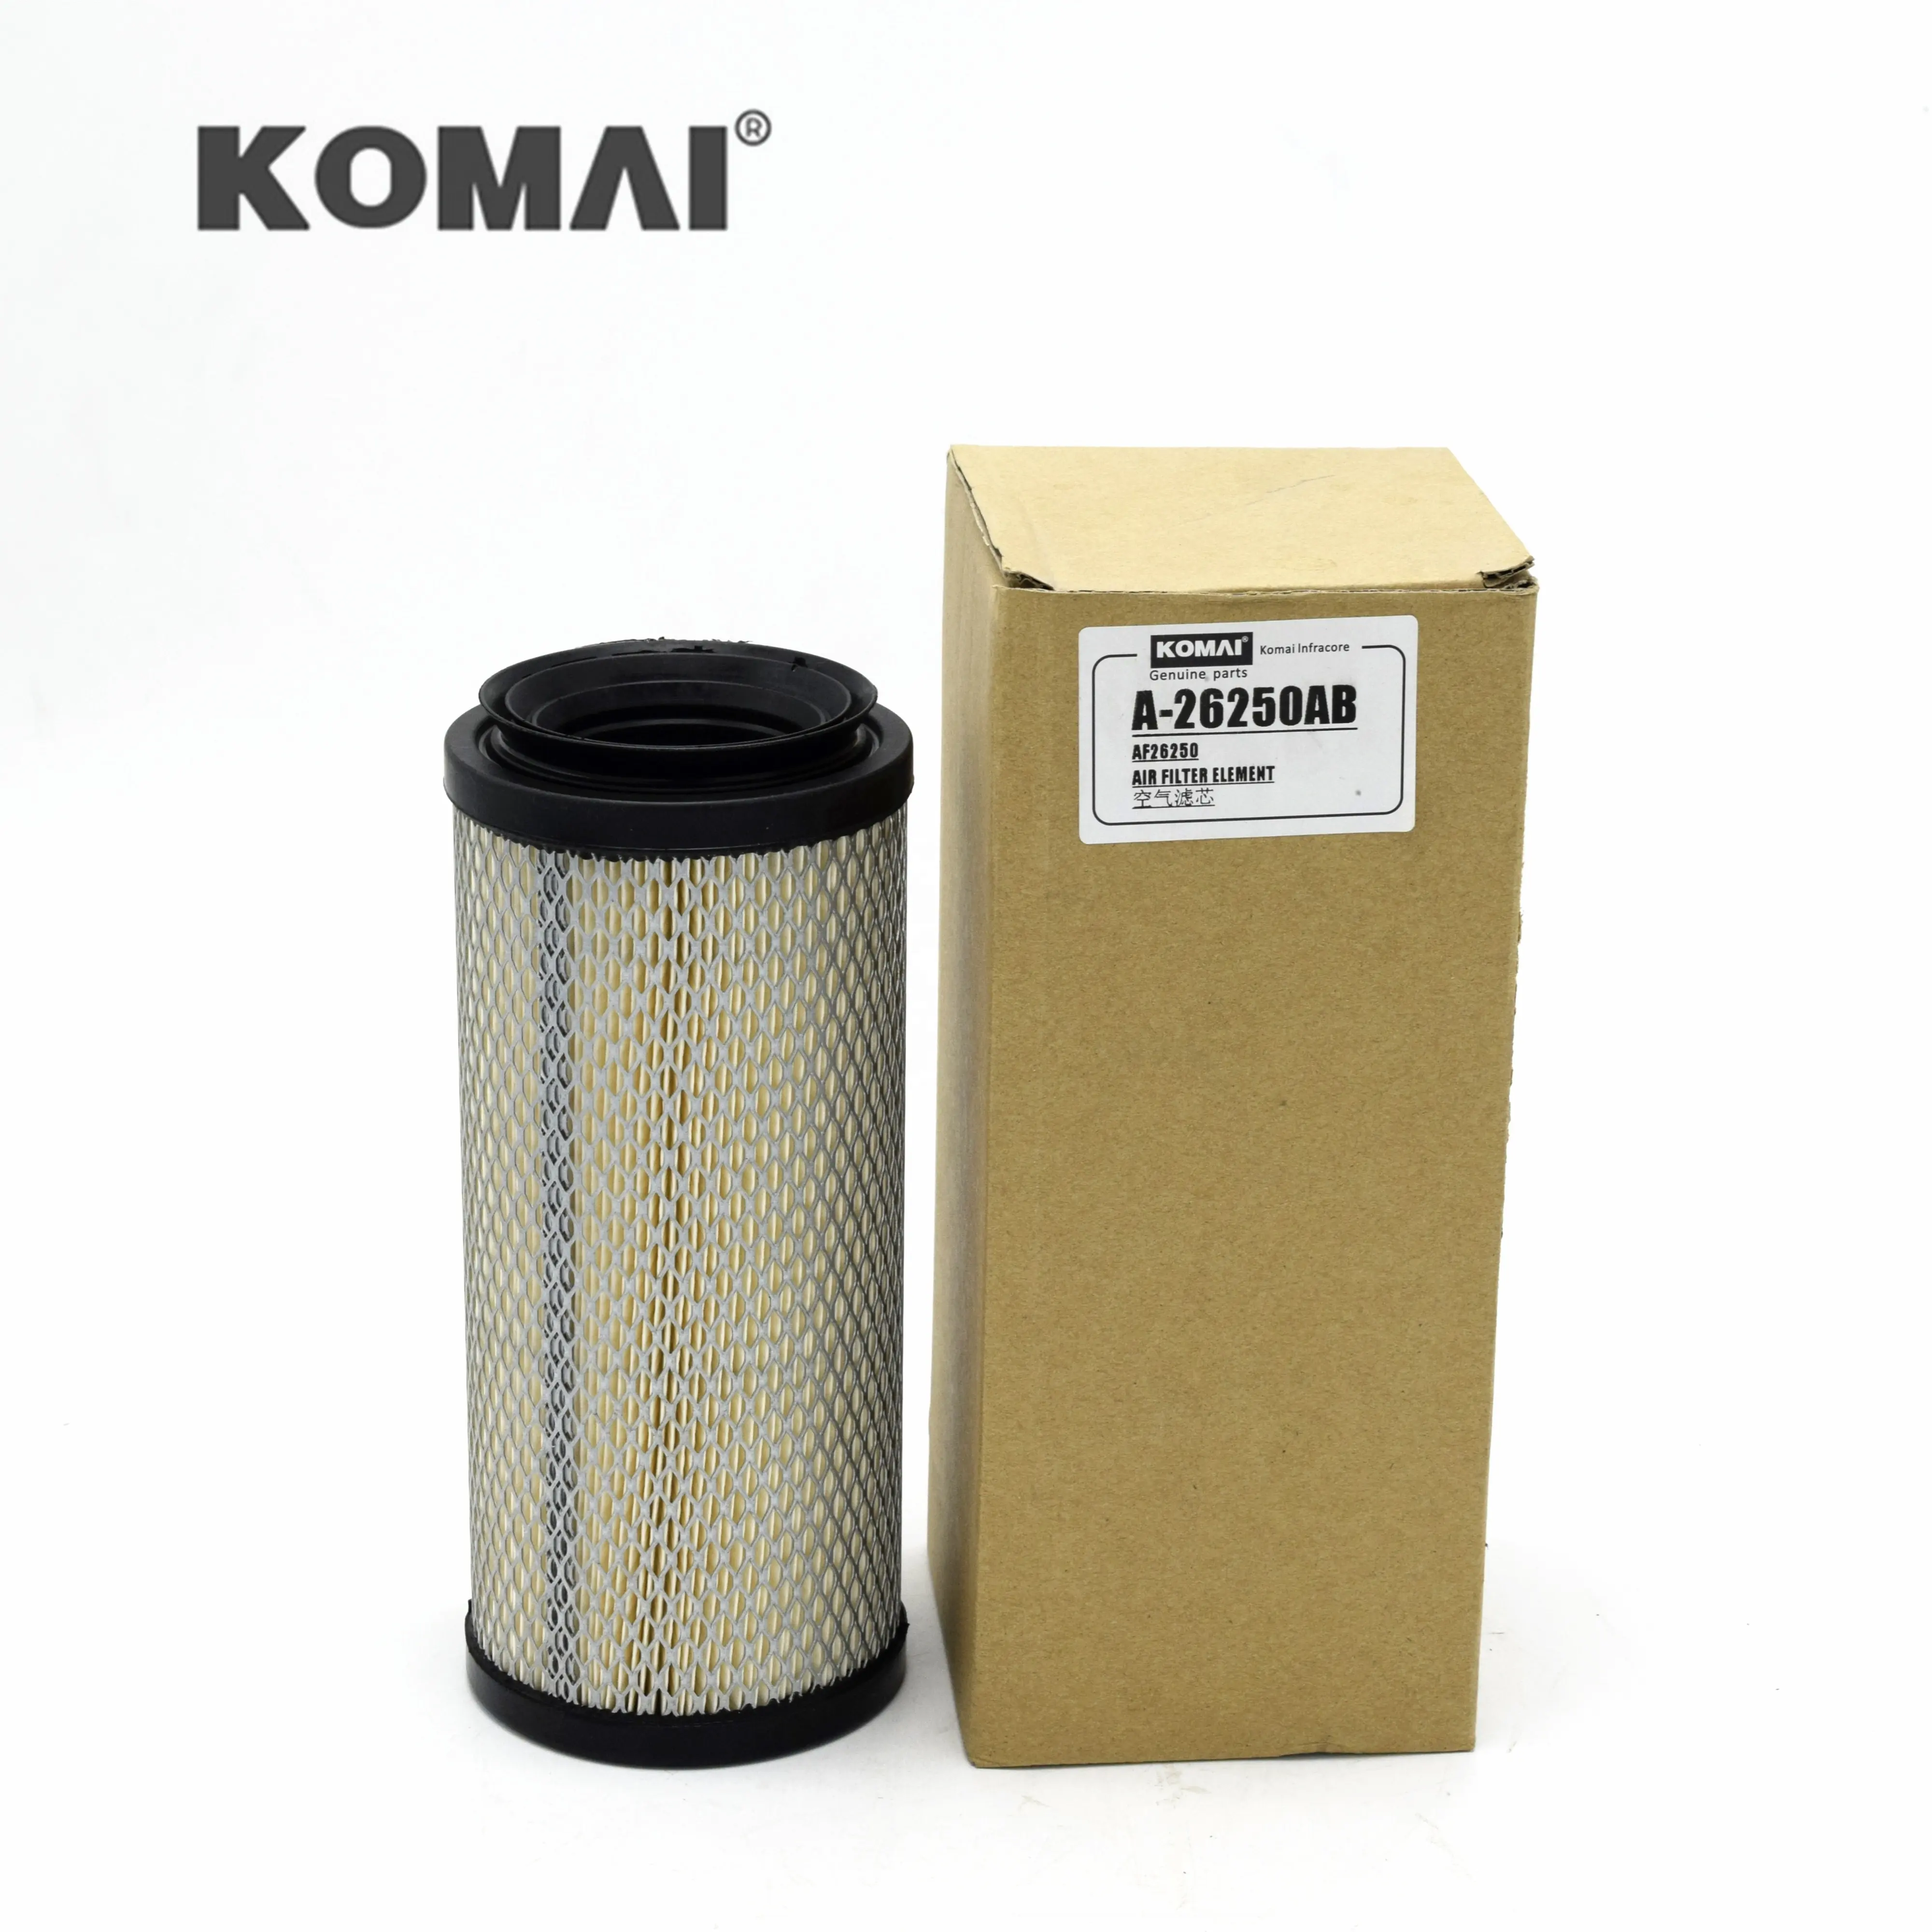 Birincil hava filtresi kullanımı Kubota ekskavatör için TC020-16320 87643355 AF 26250 PM 11P00012S006 10400511200